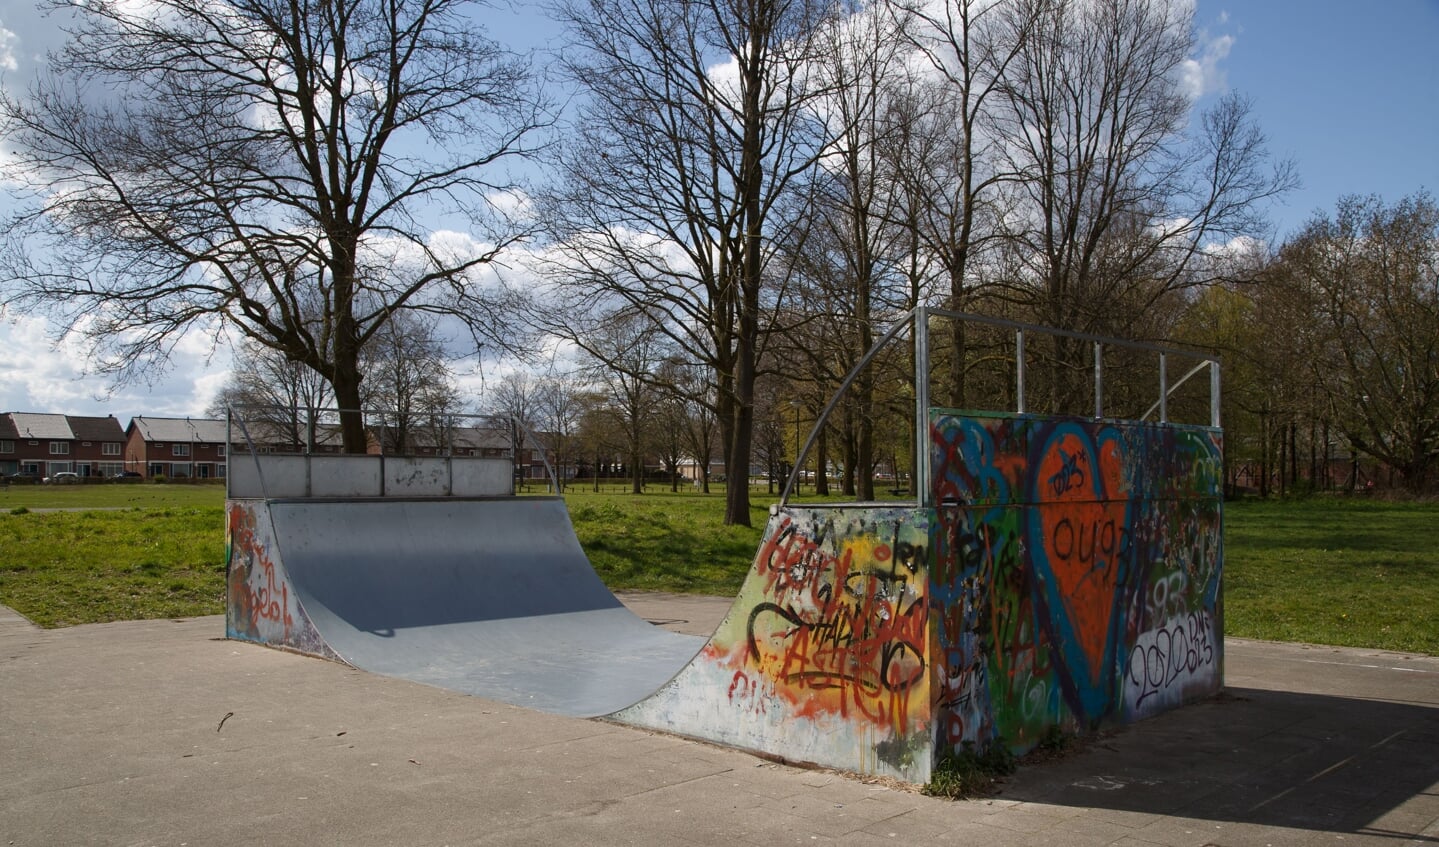 De huidige, verouderde skatefaciliteit op 't Loverveld in Asten. (Archieffoto: Joyce van Dijk)